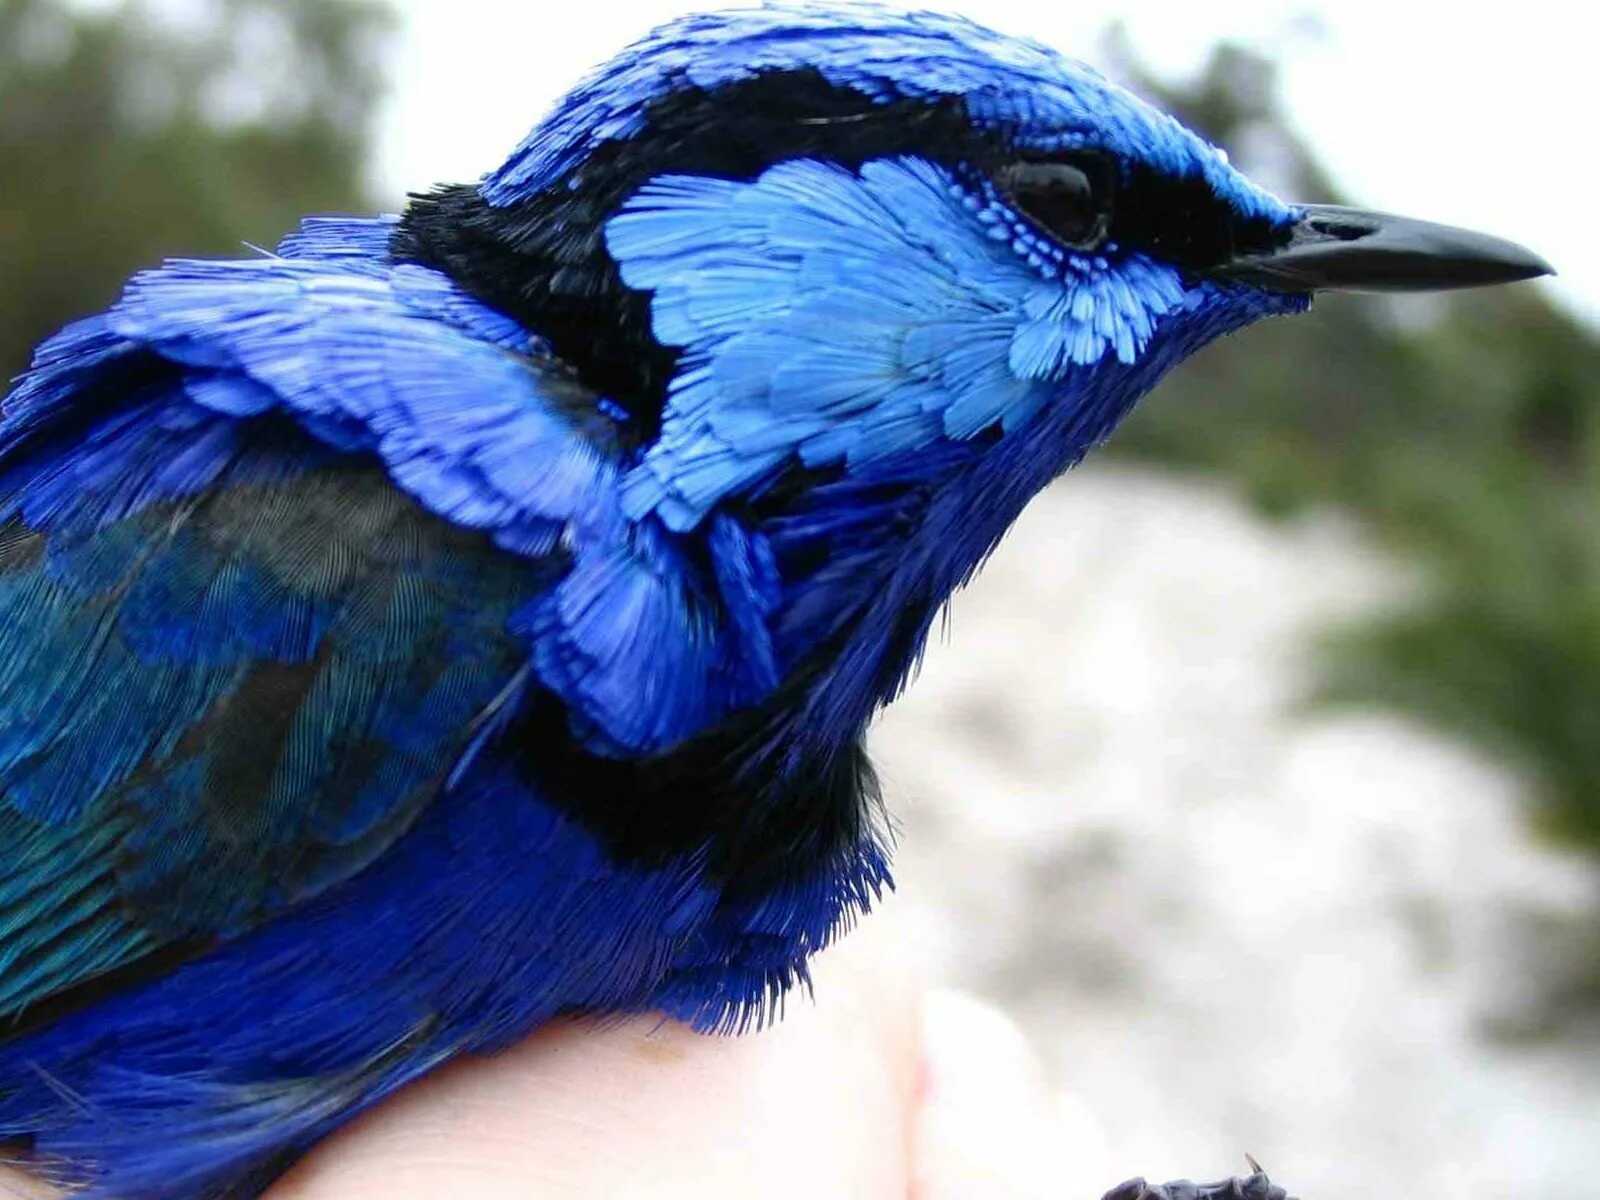 Музыка сини сини. Птица синего цвета. Птица цвета ультрамарин. Синяя птичка. Птицы с голубой окраской.